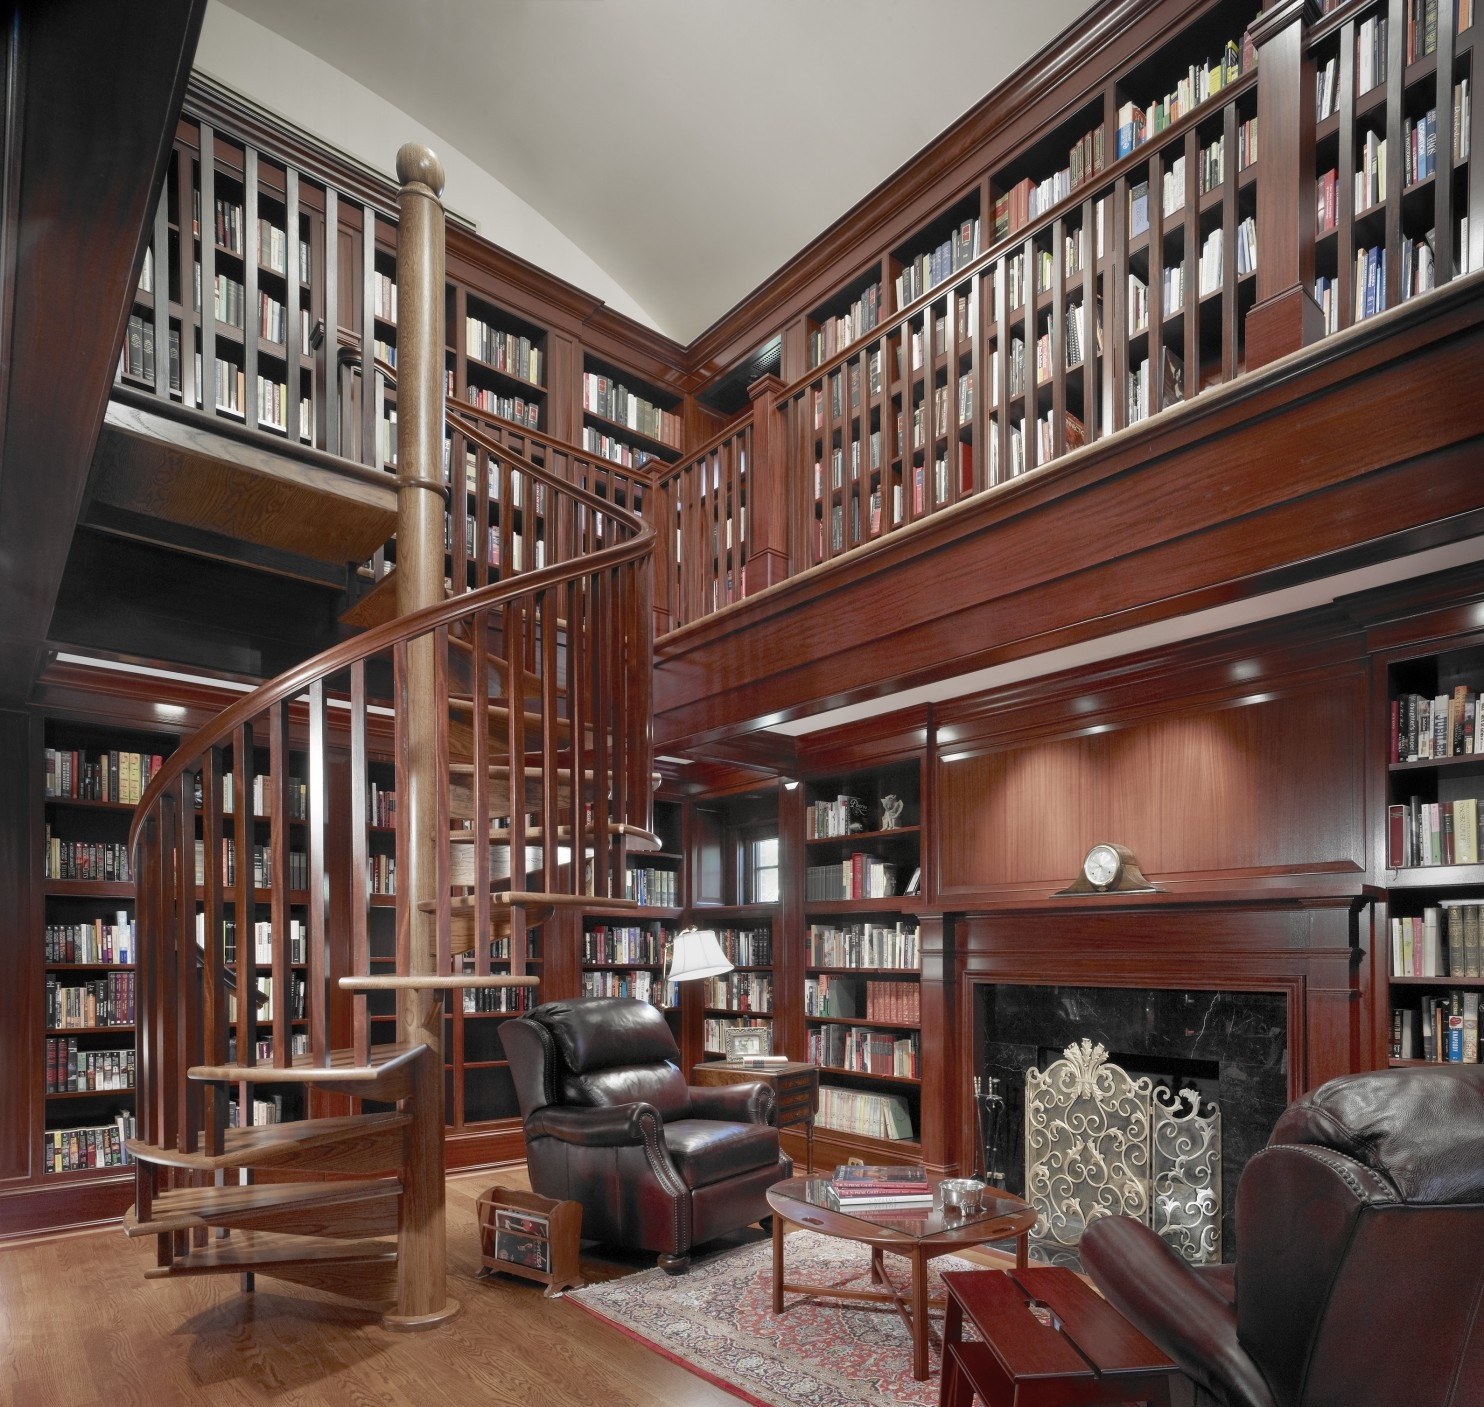 Примеры использования библиотек. Библиотека в доме. Интерьер библиотеки. Библиотека с высокими потолками. Домашняя библиотека интерьер.